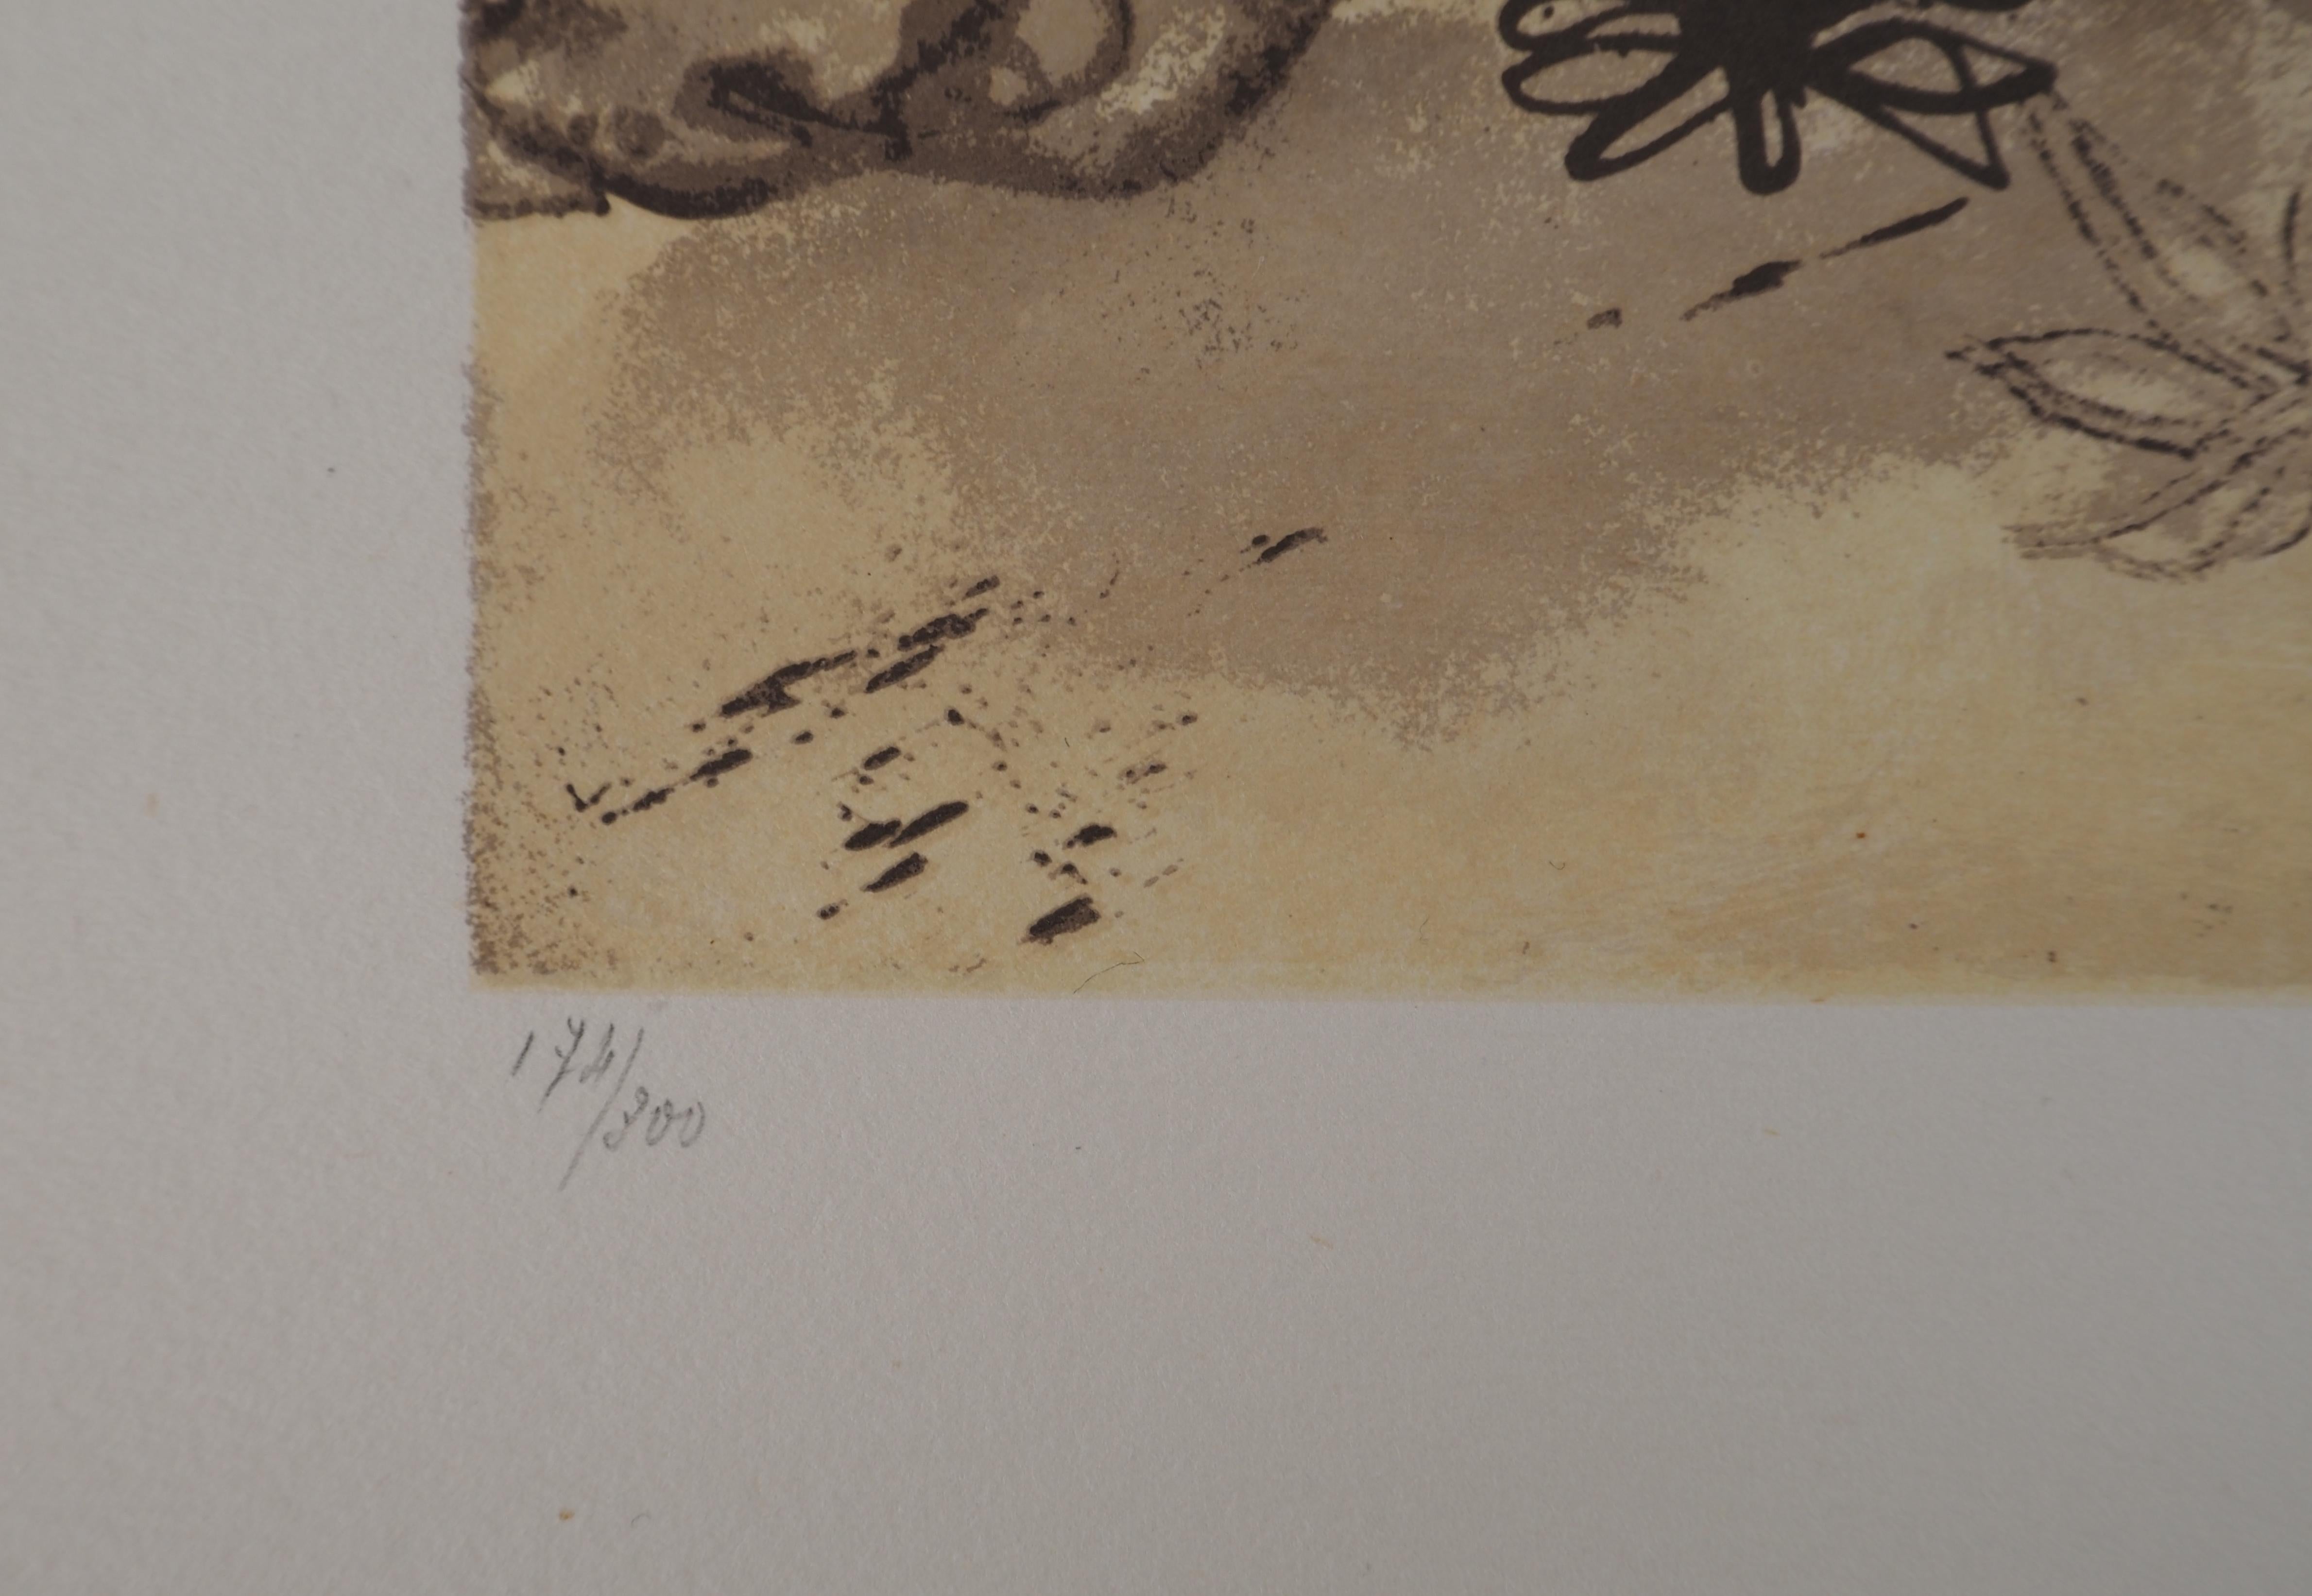 Salvador Dali (1904-1989)
Rhinozeros, Hommage an Albrecht DURER, 1971

Original-Lithographie
Mit Bleistift signiert
Nummeriert / 300
Auf Guarro Vellum 76 x 56,5 cm (ca. 30 x 22 Zoll)

REFERENZ: Gesamtkatalog des grafischen Werks von Sala Gaspar,